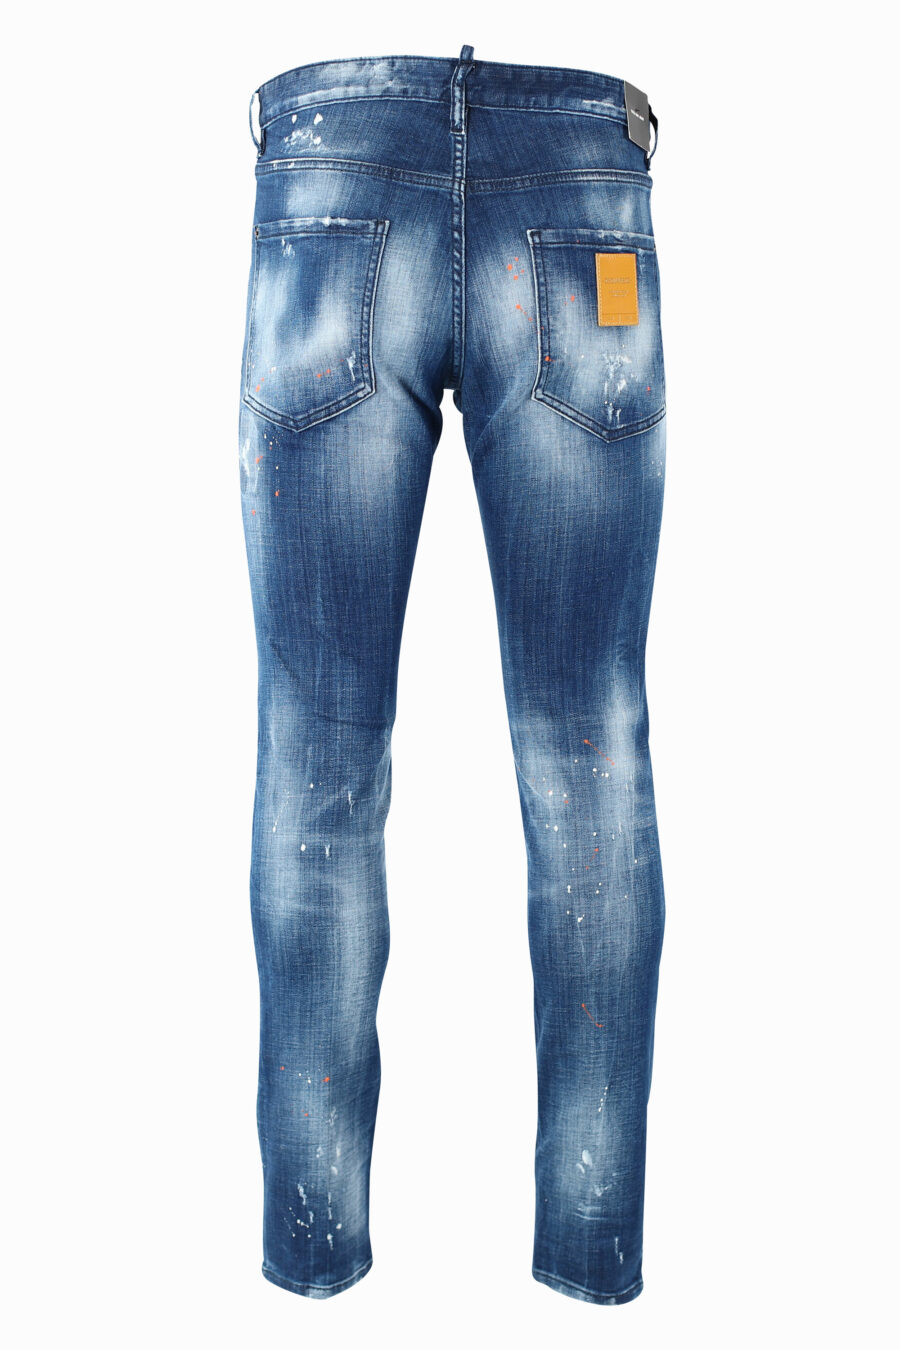 Dsquared2 - calças de ganga skater jean azuis com rasgões - BLS Fashion